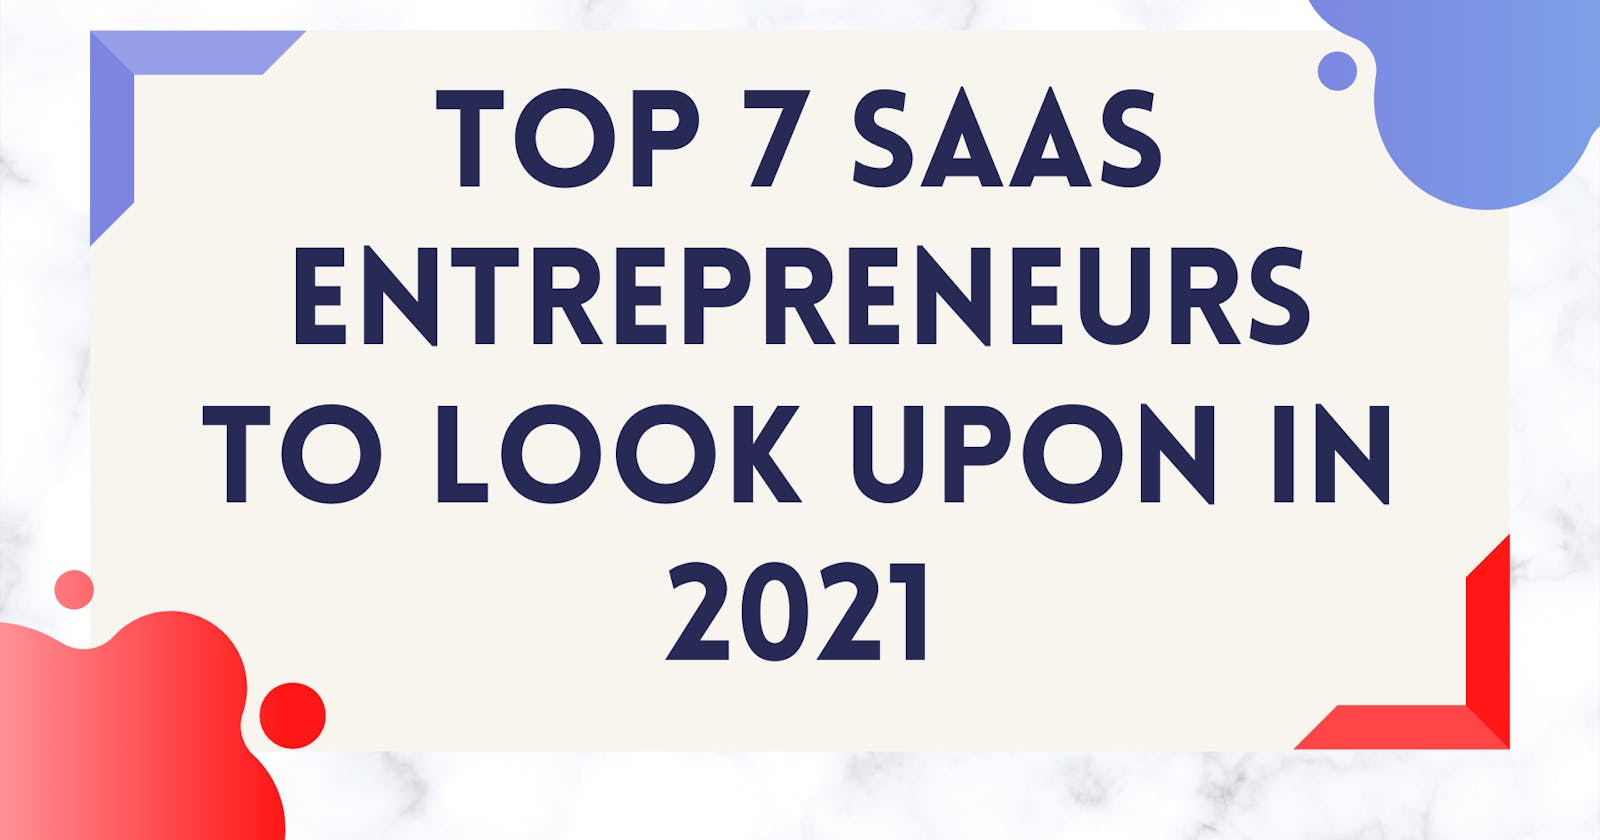 Top 7 SaaS Entrepreneurs to look upon in 2021.